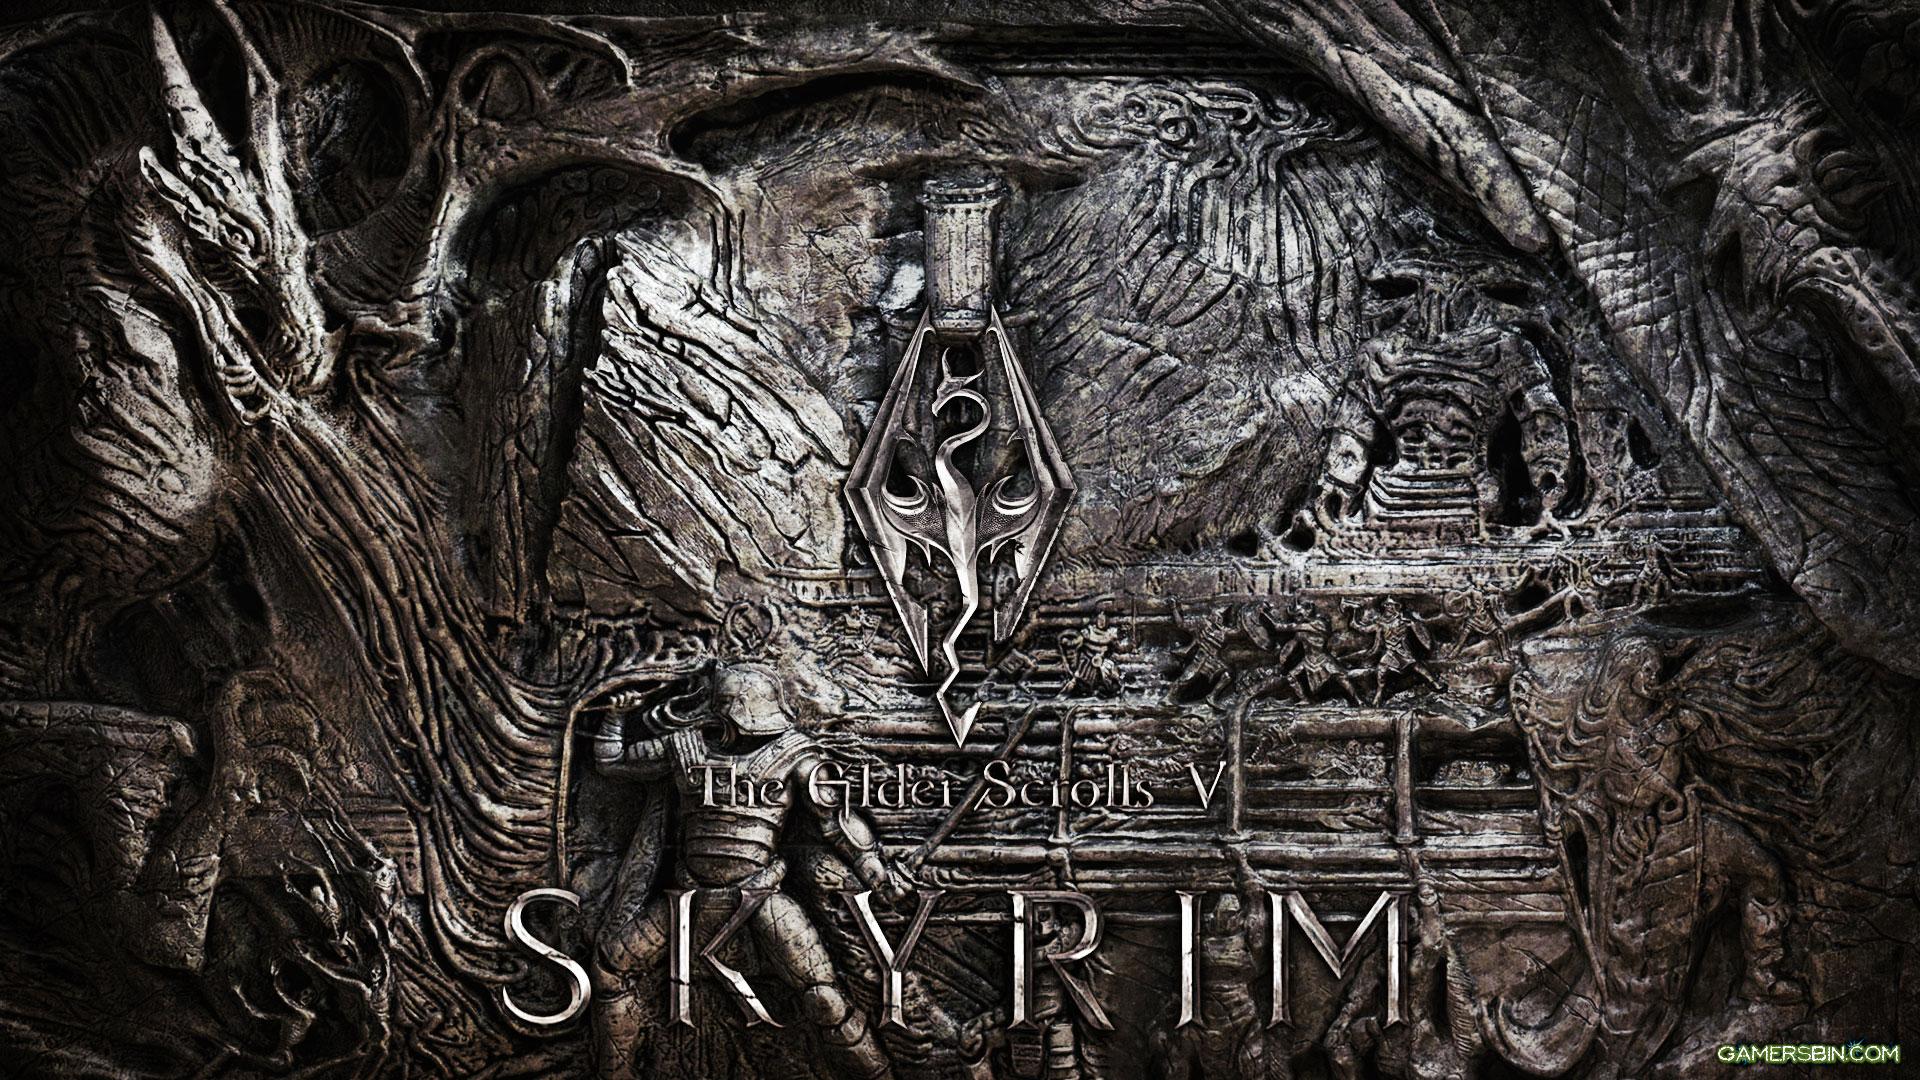 Wallpaper The Elder Scrolls V: Skyrim logo on the wall